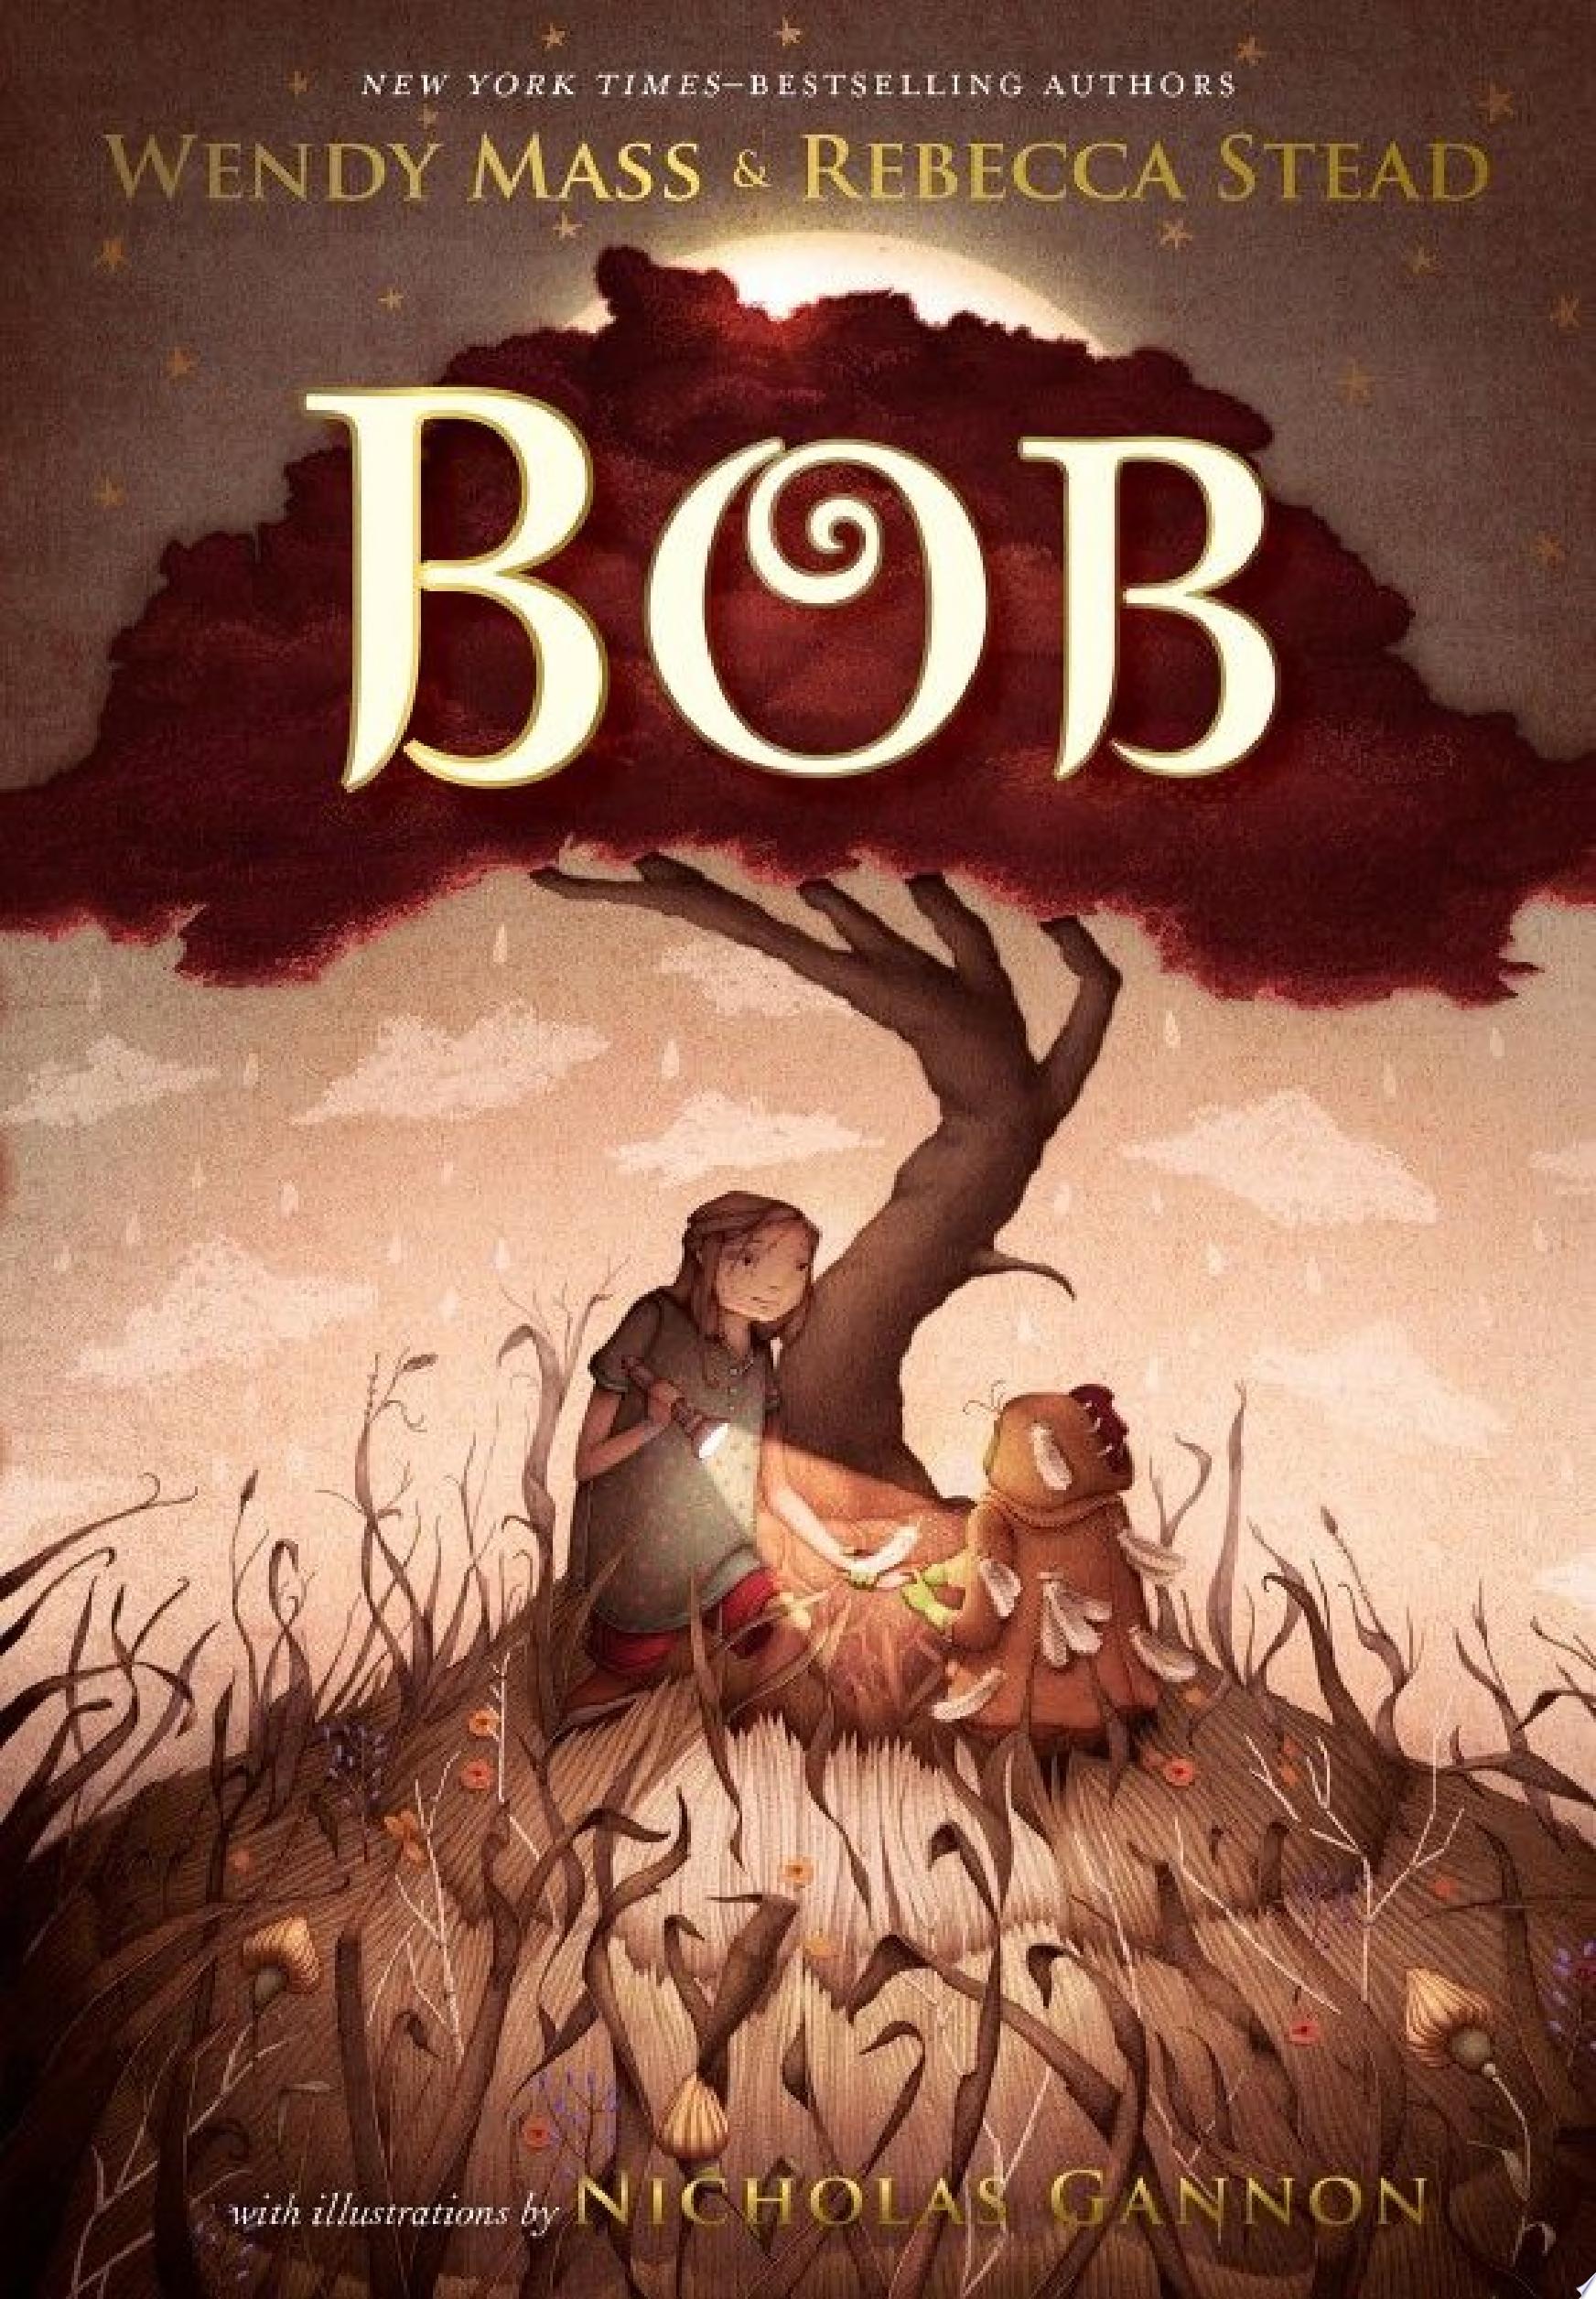 Image for "Bob"